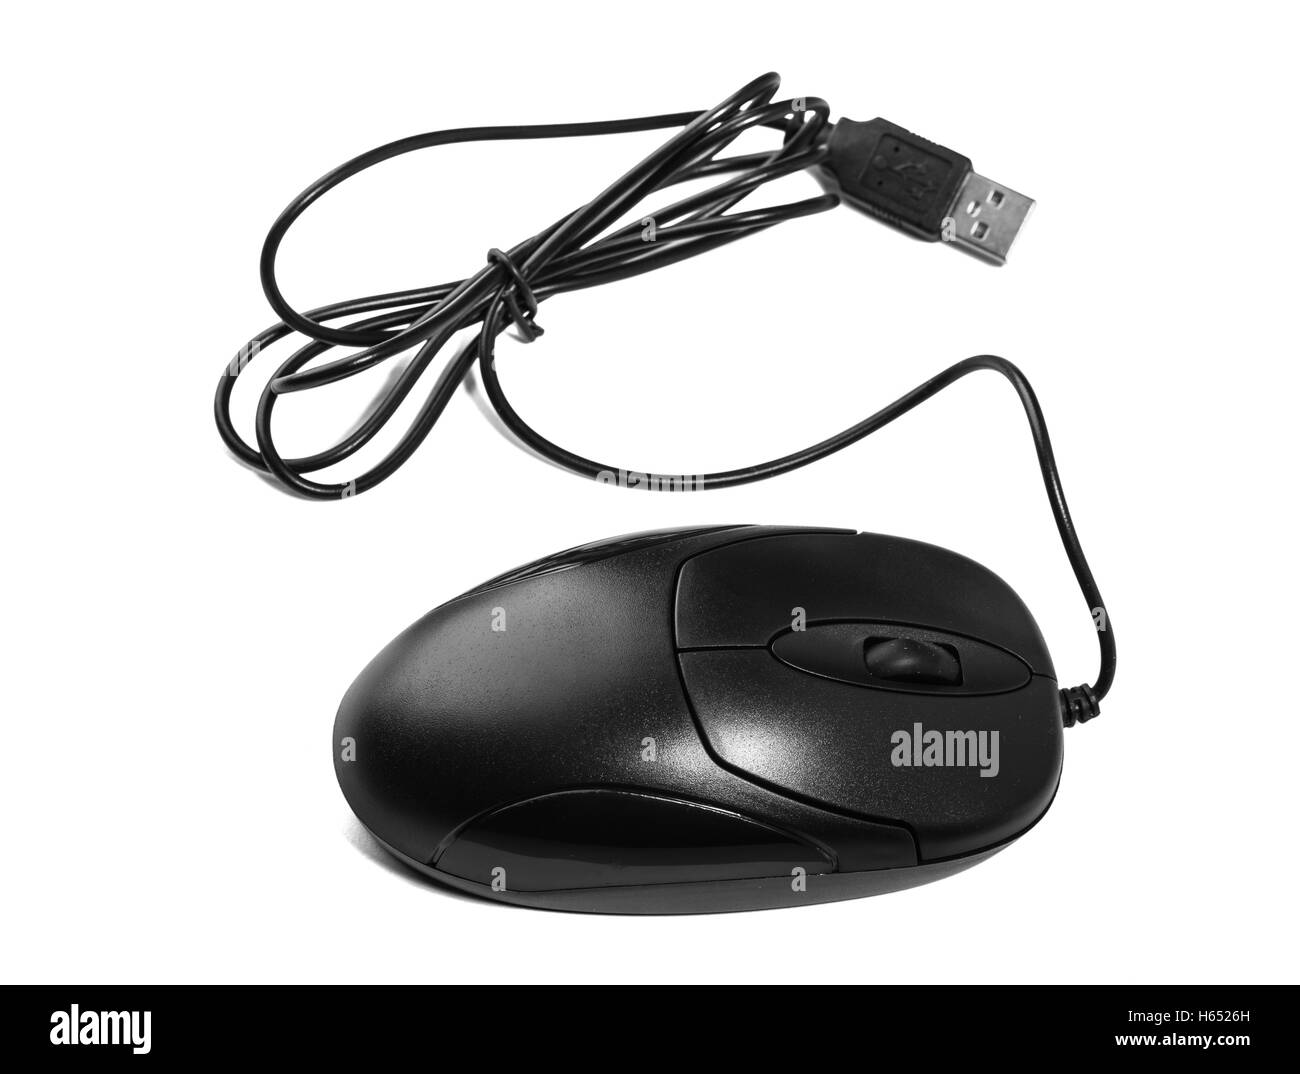 Computer-USB-Maus isoliert auf weißem Hintergrund Stockfoto